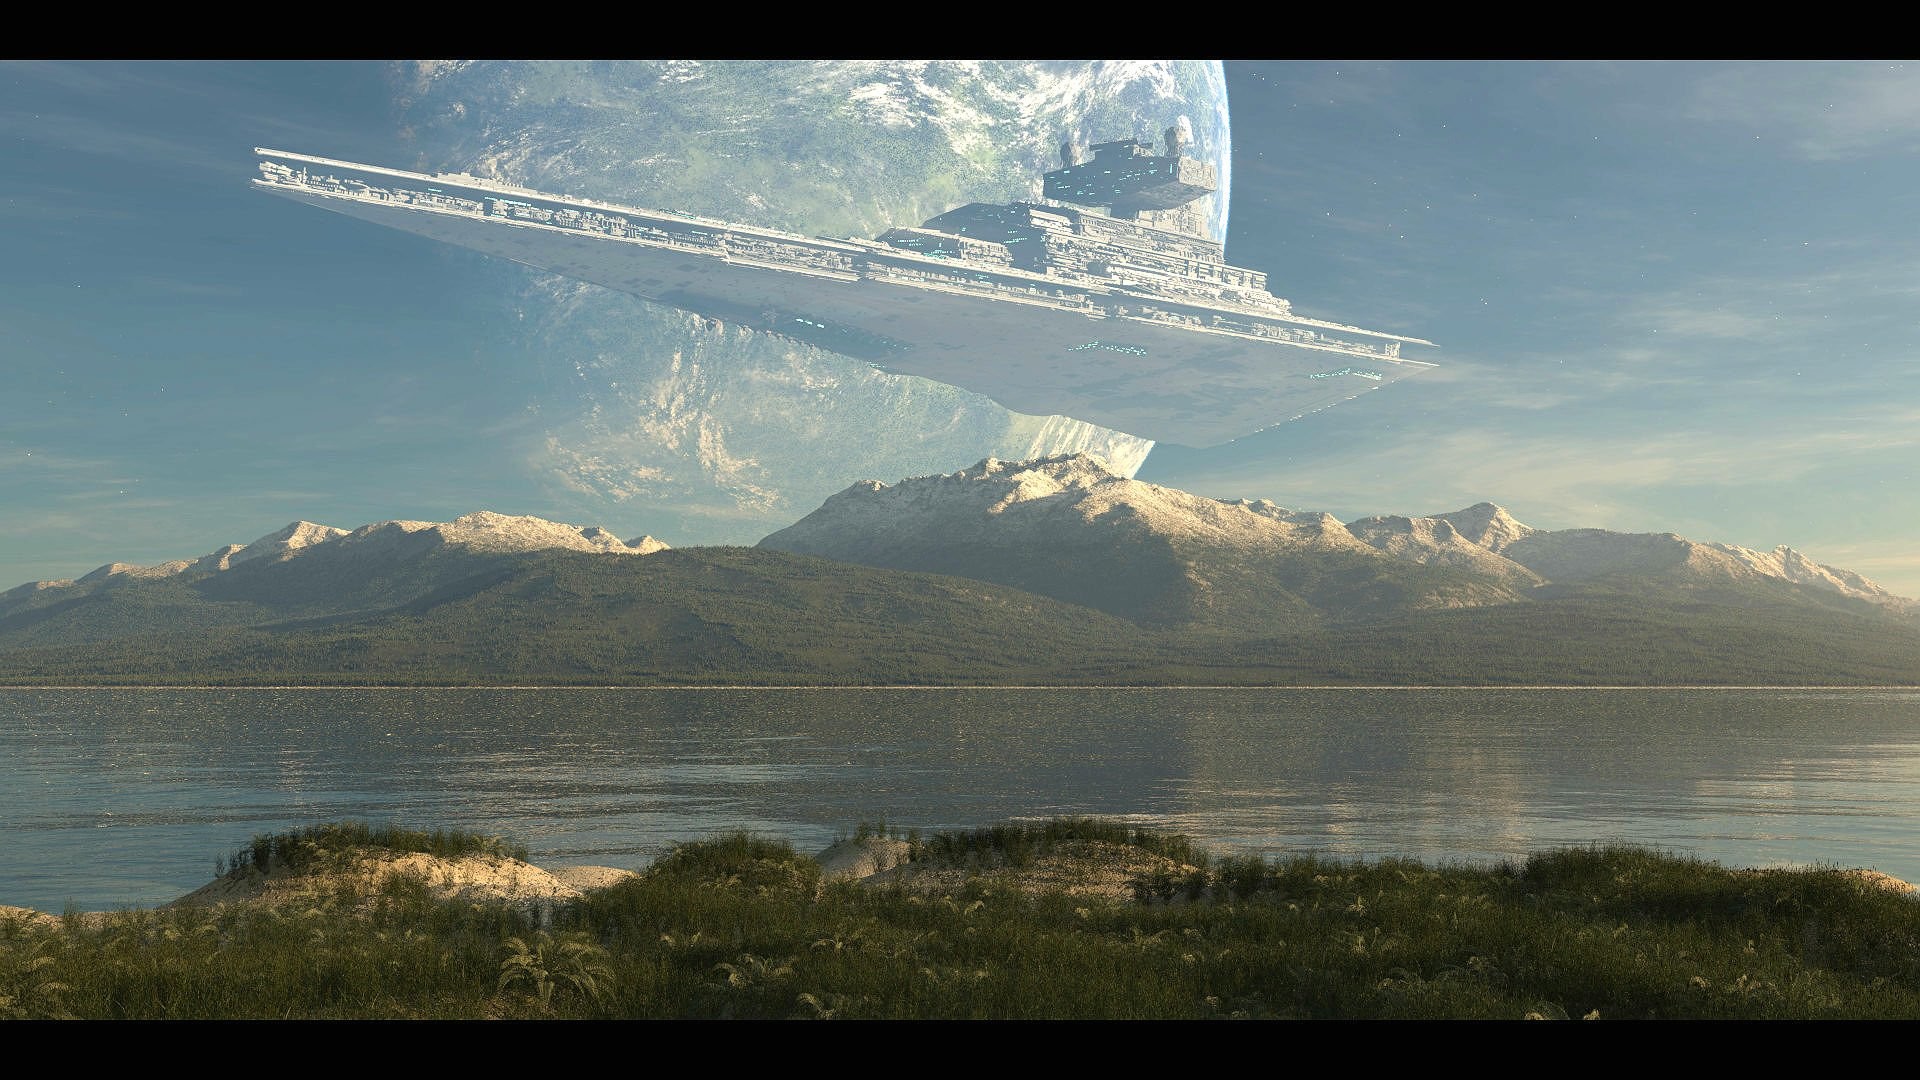 Star Wars Landscape